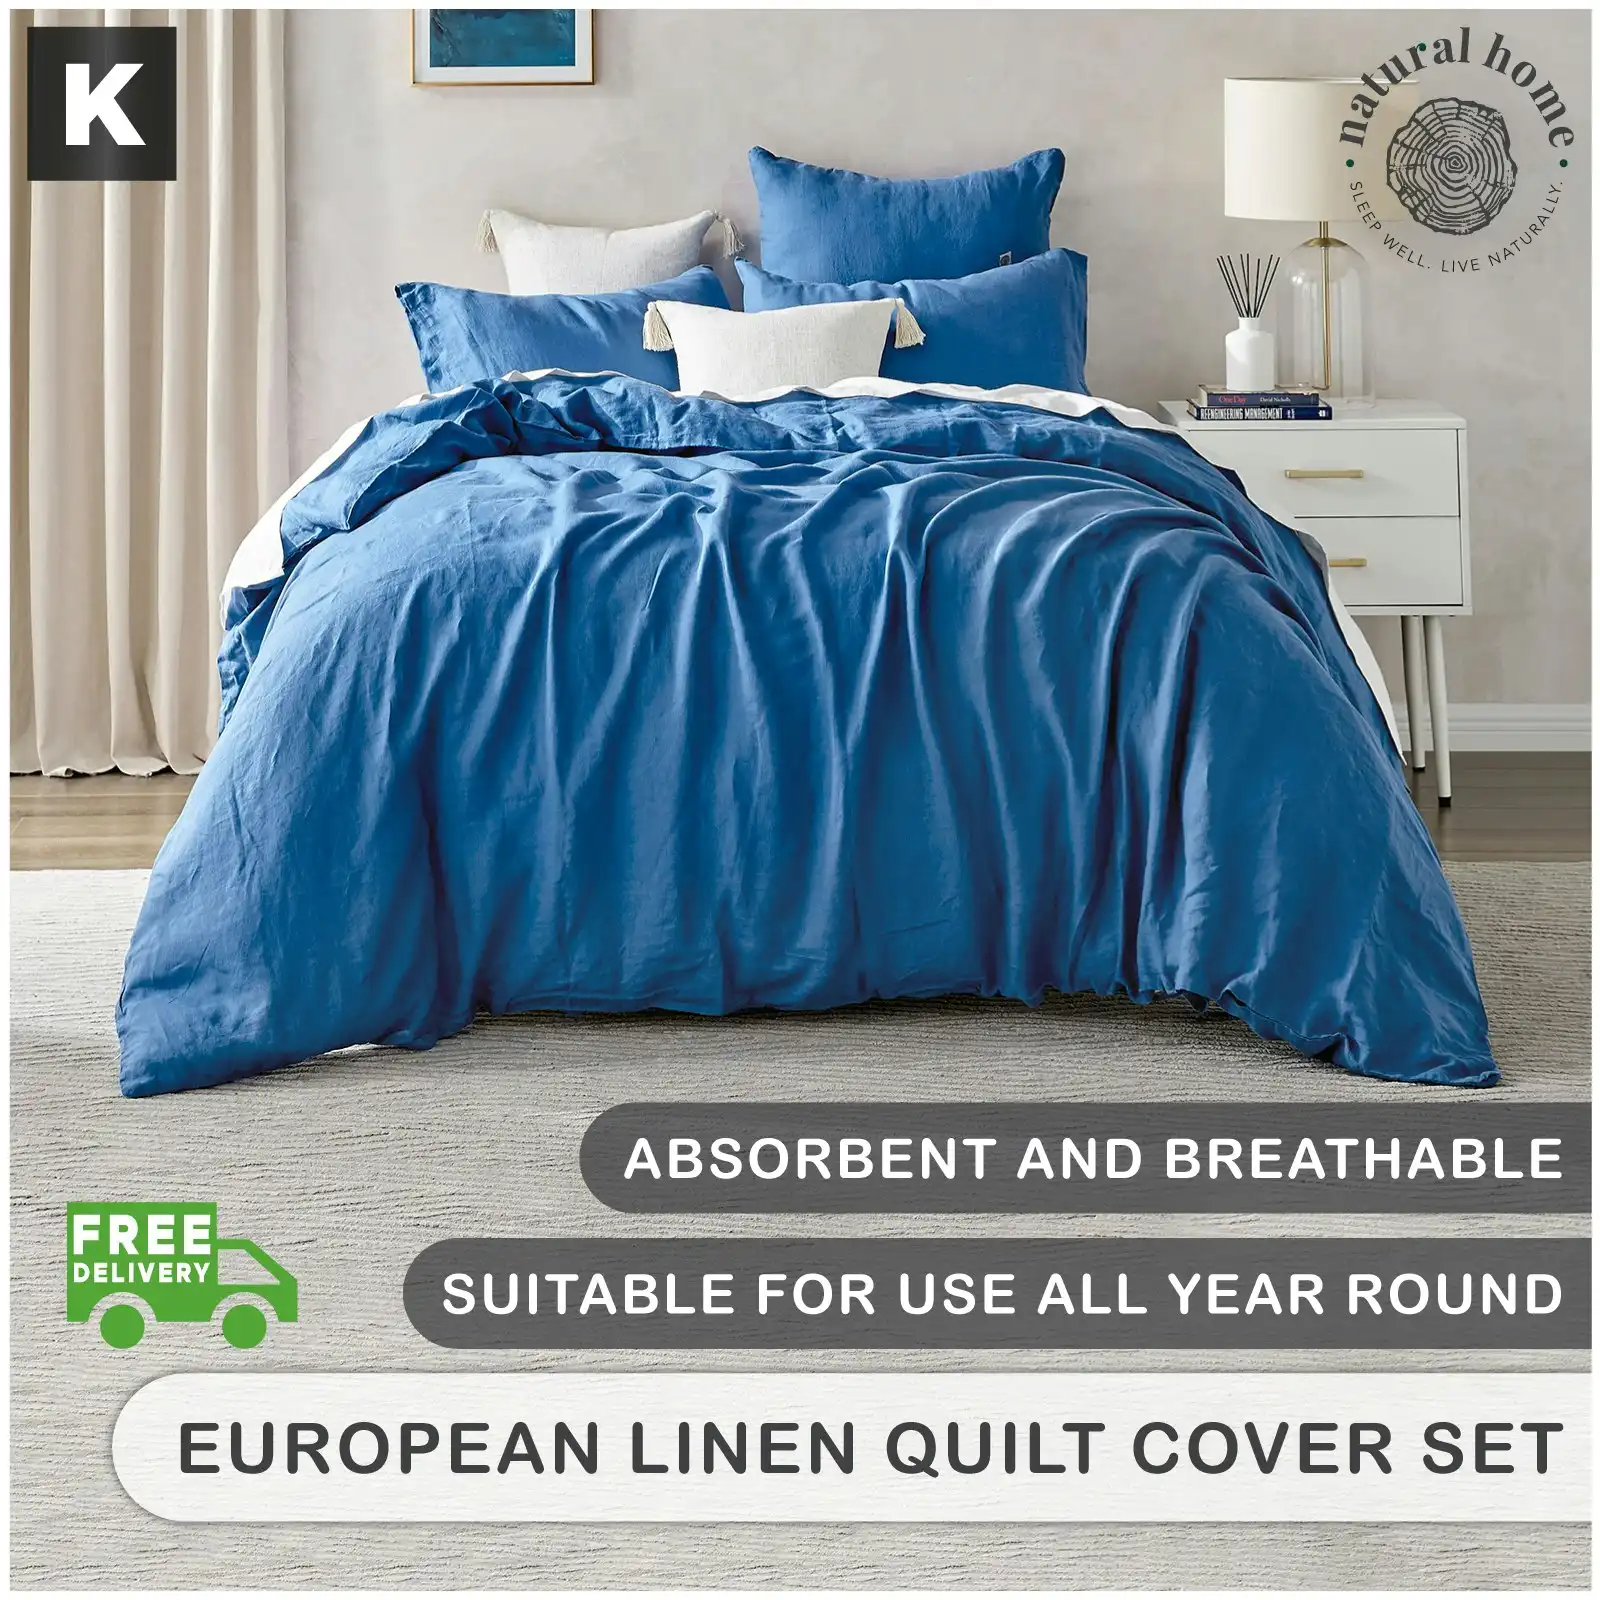 Natural Home Linen 100% European Flax Linen Quilt Cover Set - Deep Blue - King Bed